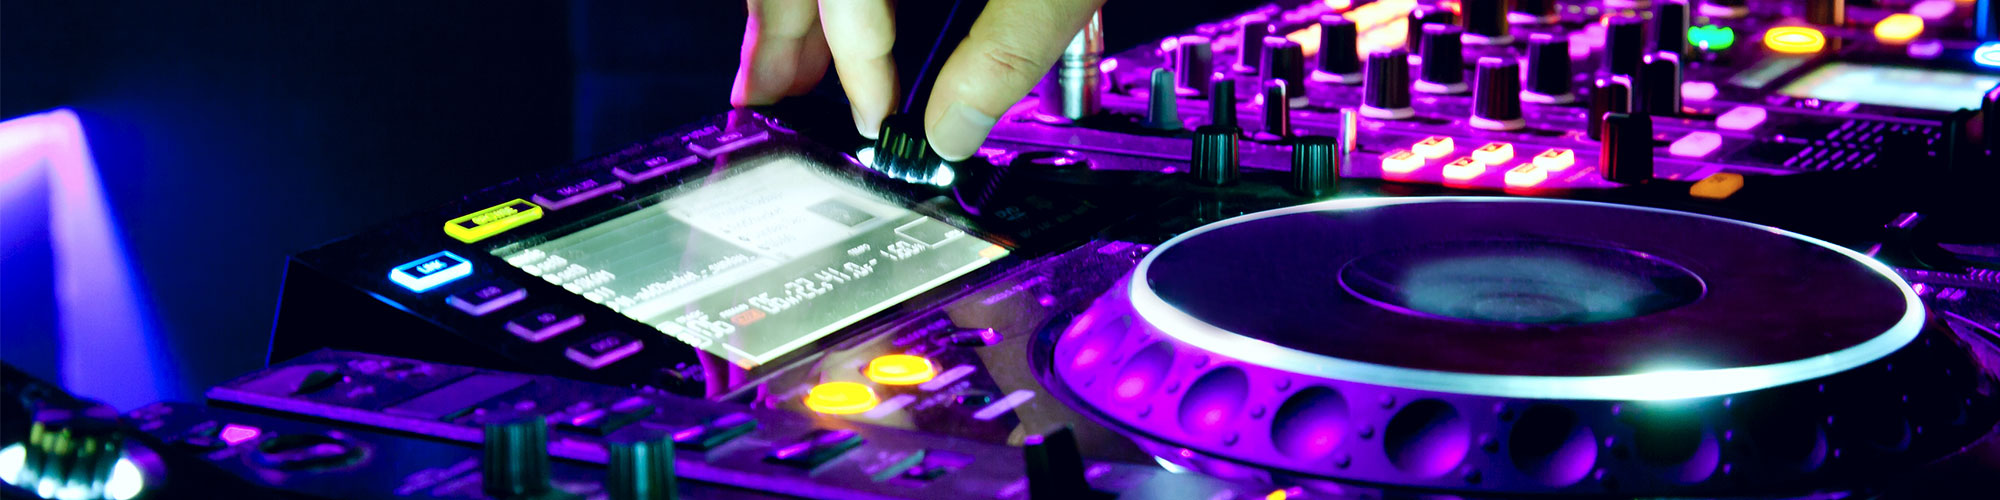 DJ Table Closeup